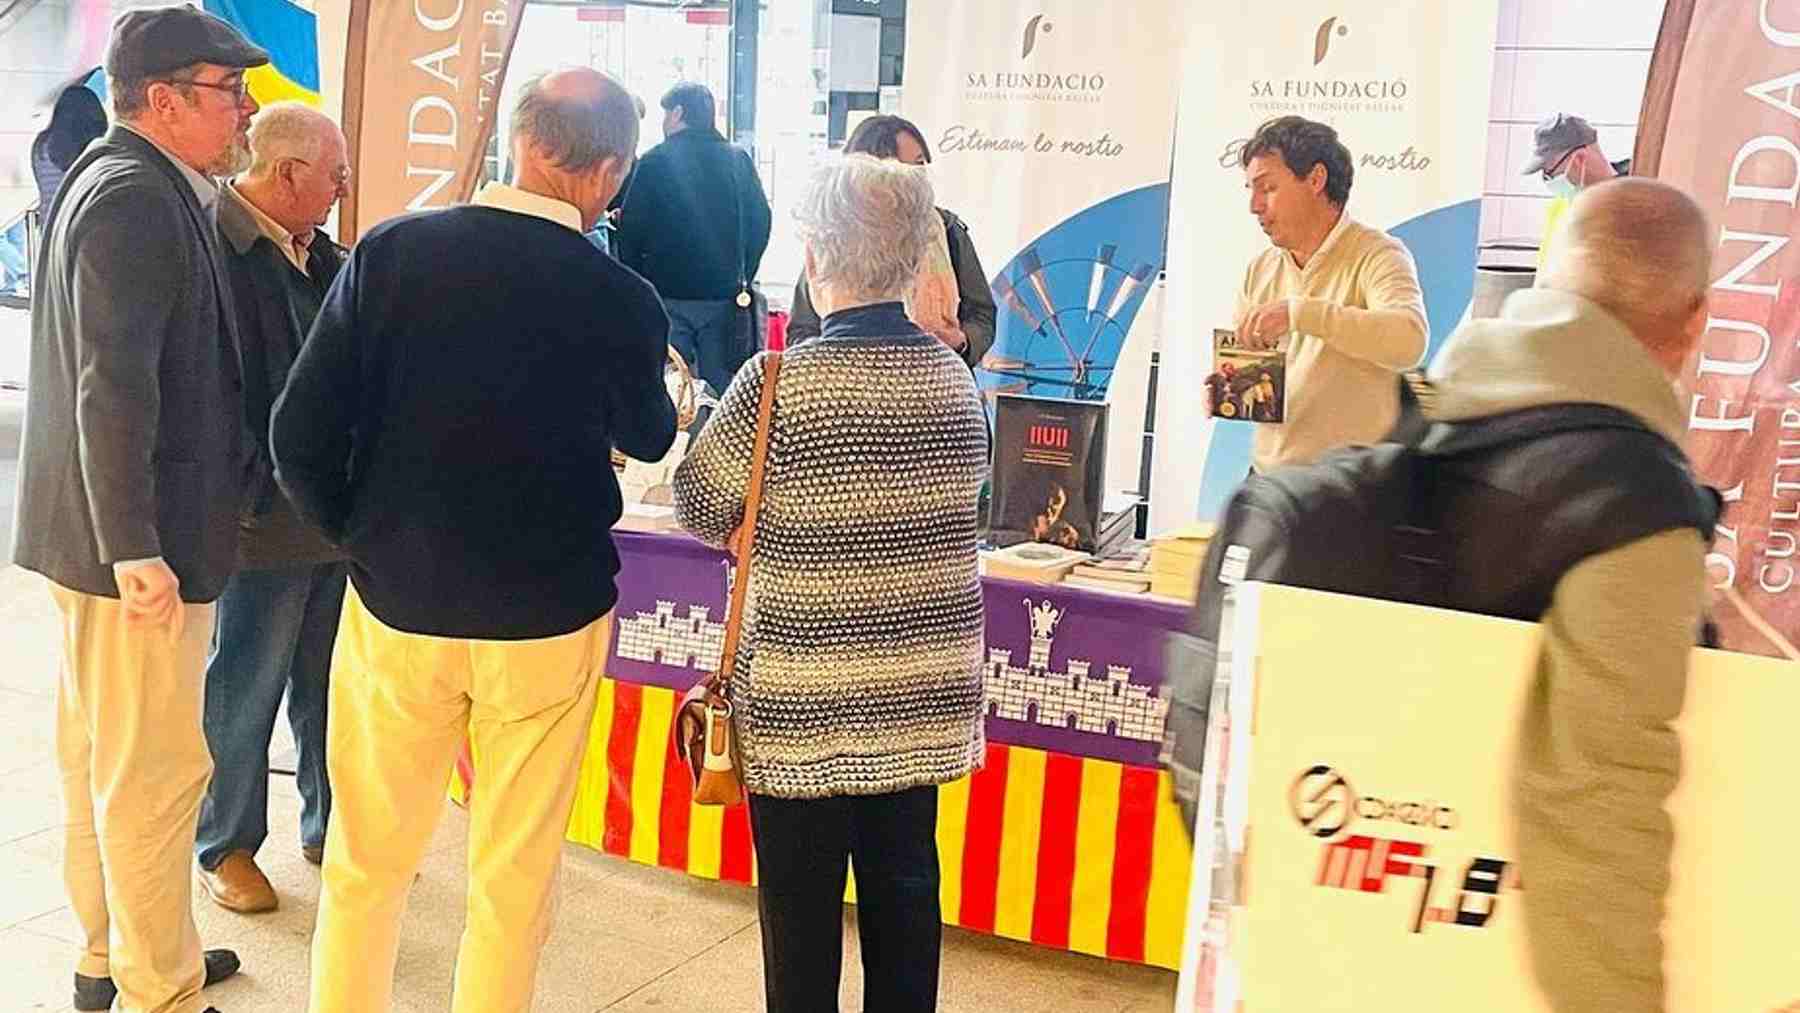 Simpatizantes de Sa Fundació en un stand de la entidad en Palma.